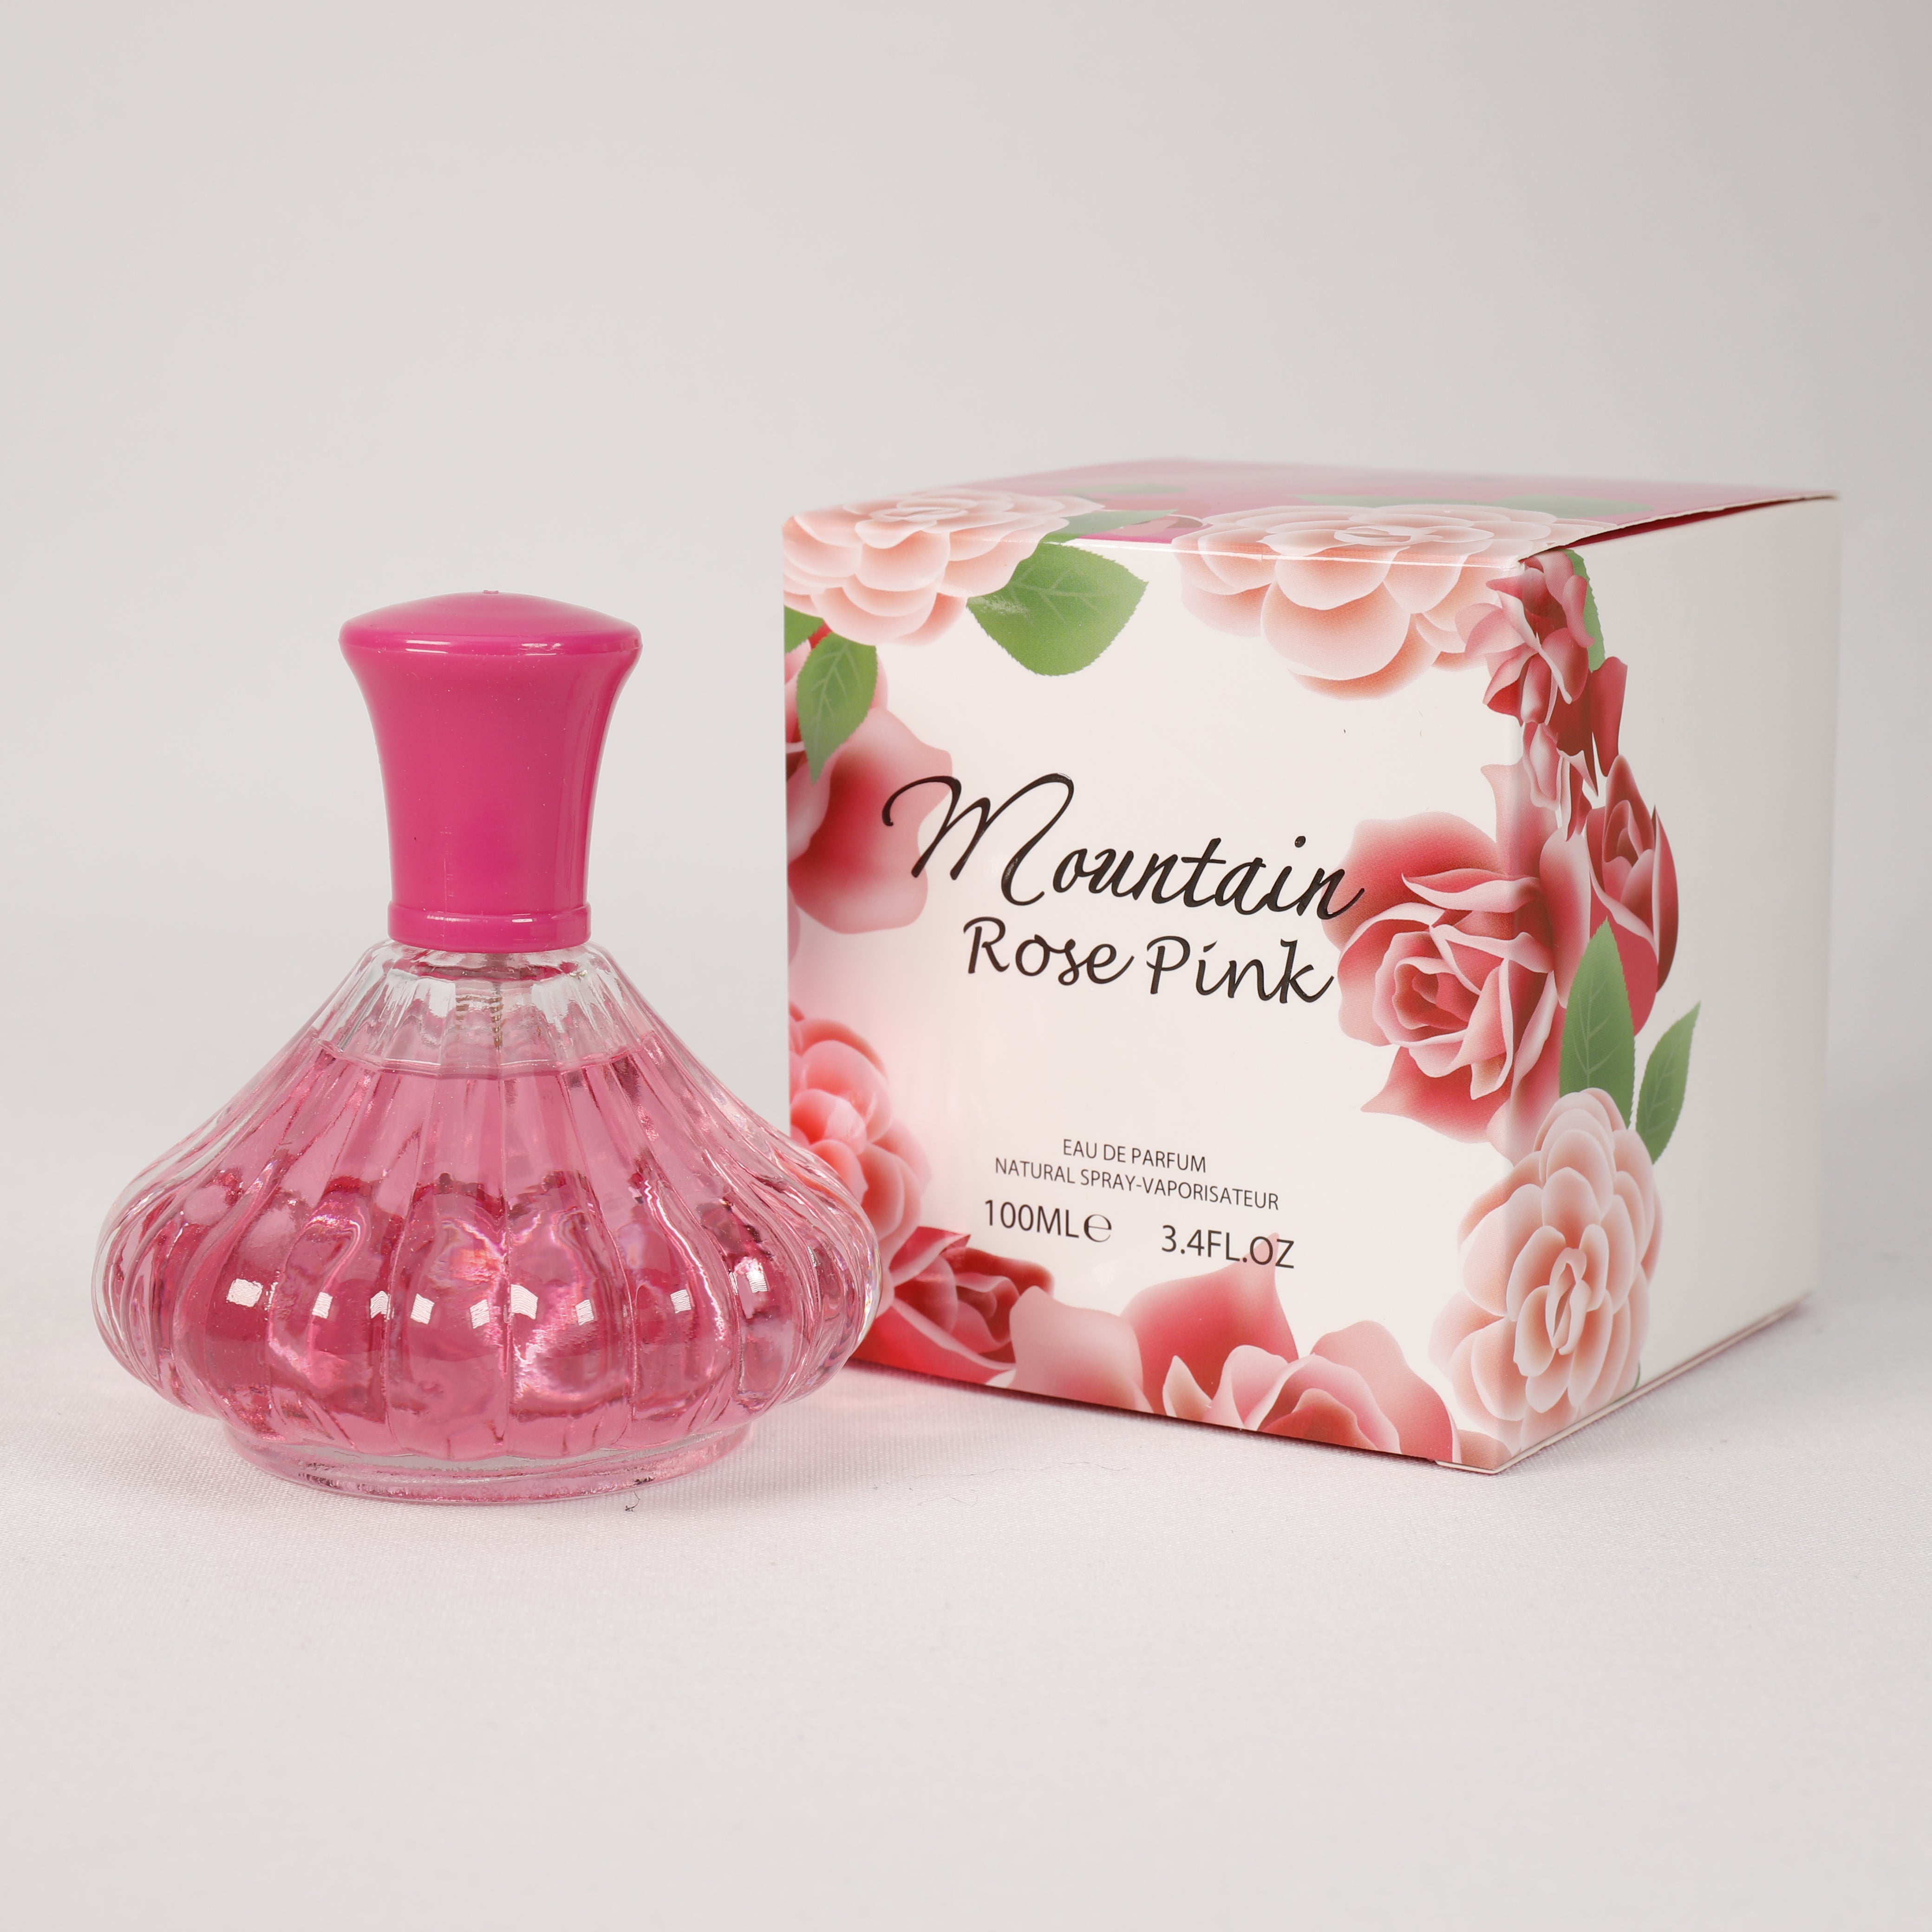 Mountain Rose Pink für Damen, Vaporizer mit natürlichem Spray, 100 ml, Duft, Parfüm, NEU OVP